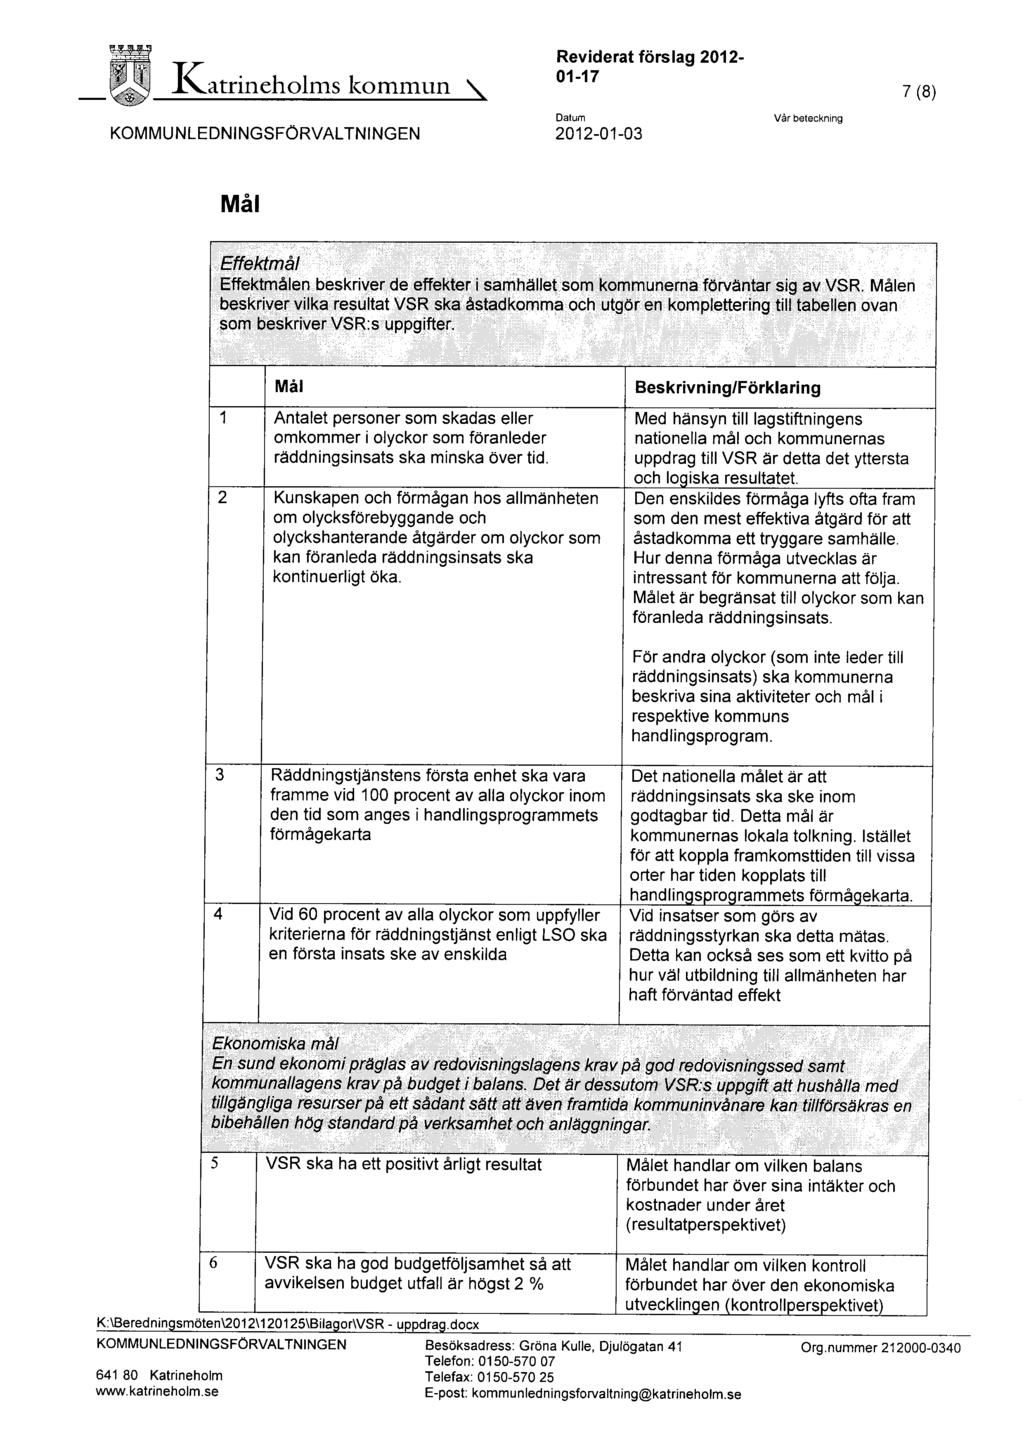 Katrineholms kommun KOMMUNLEDNINGSFÖRVALTNINGEN Reviderat förslag 2012-01-17 Datum 2012-01-03 Vår beteckning 7 (8) Mål Effektmål Effektmålen beskriver de effekter i samhället som kommunerna förväntar